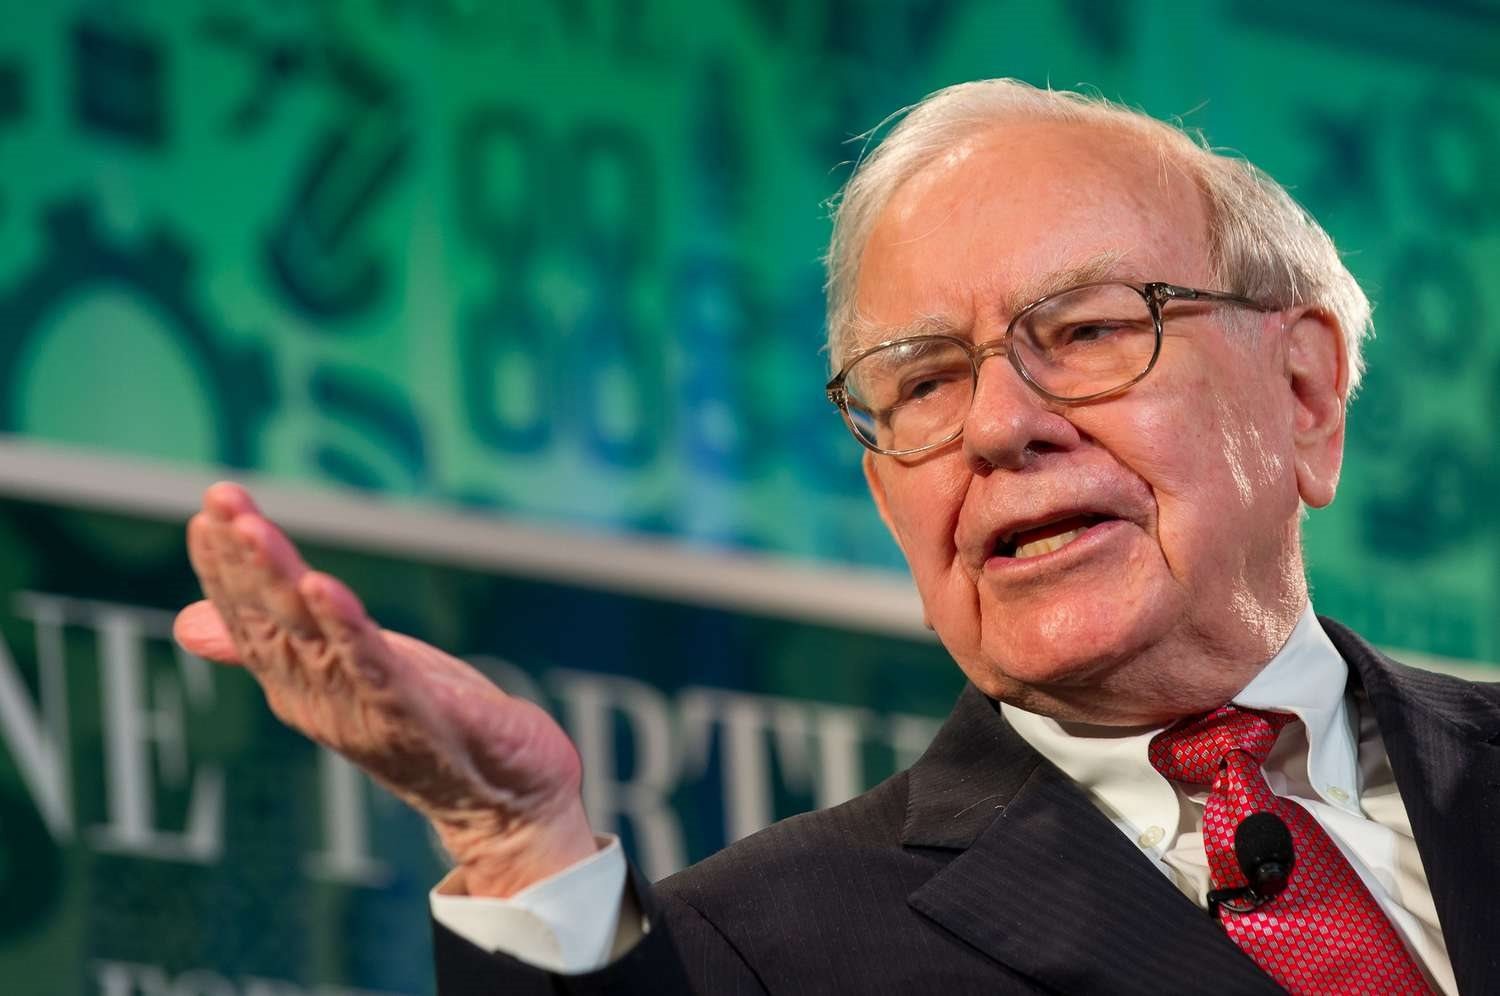 'Bàn tay vàng' của Warren Buffett: Biến doanh nghiệp vô danh thành đế chế 90 tỷ USD, cung cấp 1 thứ mà hàng triệu người Mỹ không thể sống thiếu - Ảnh 1.